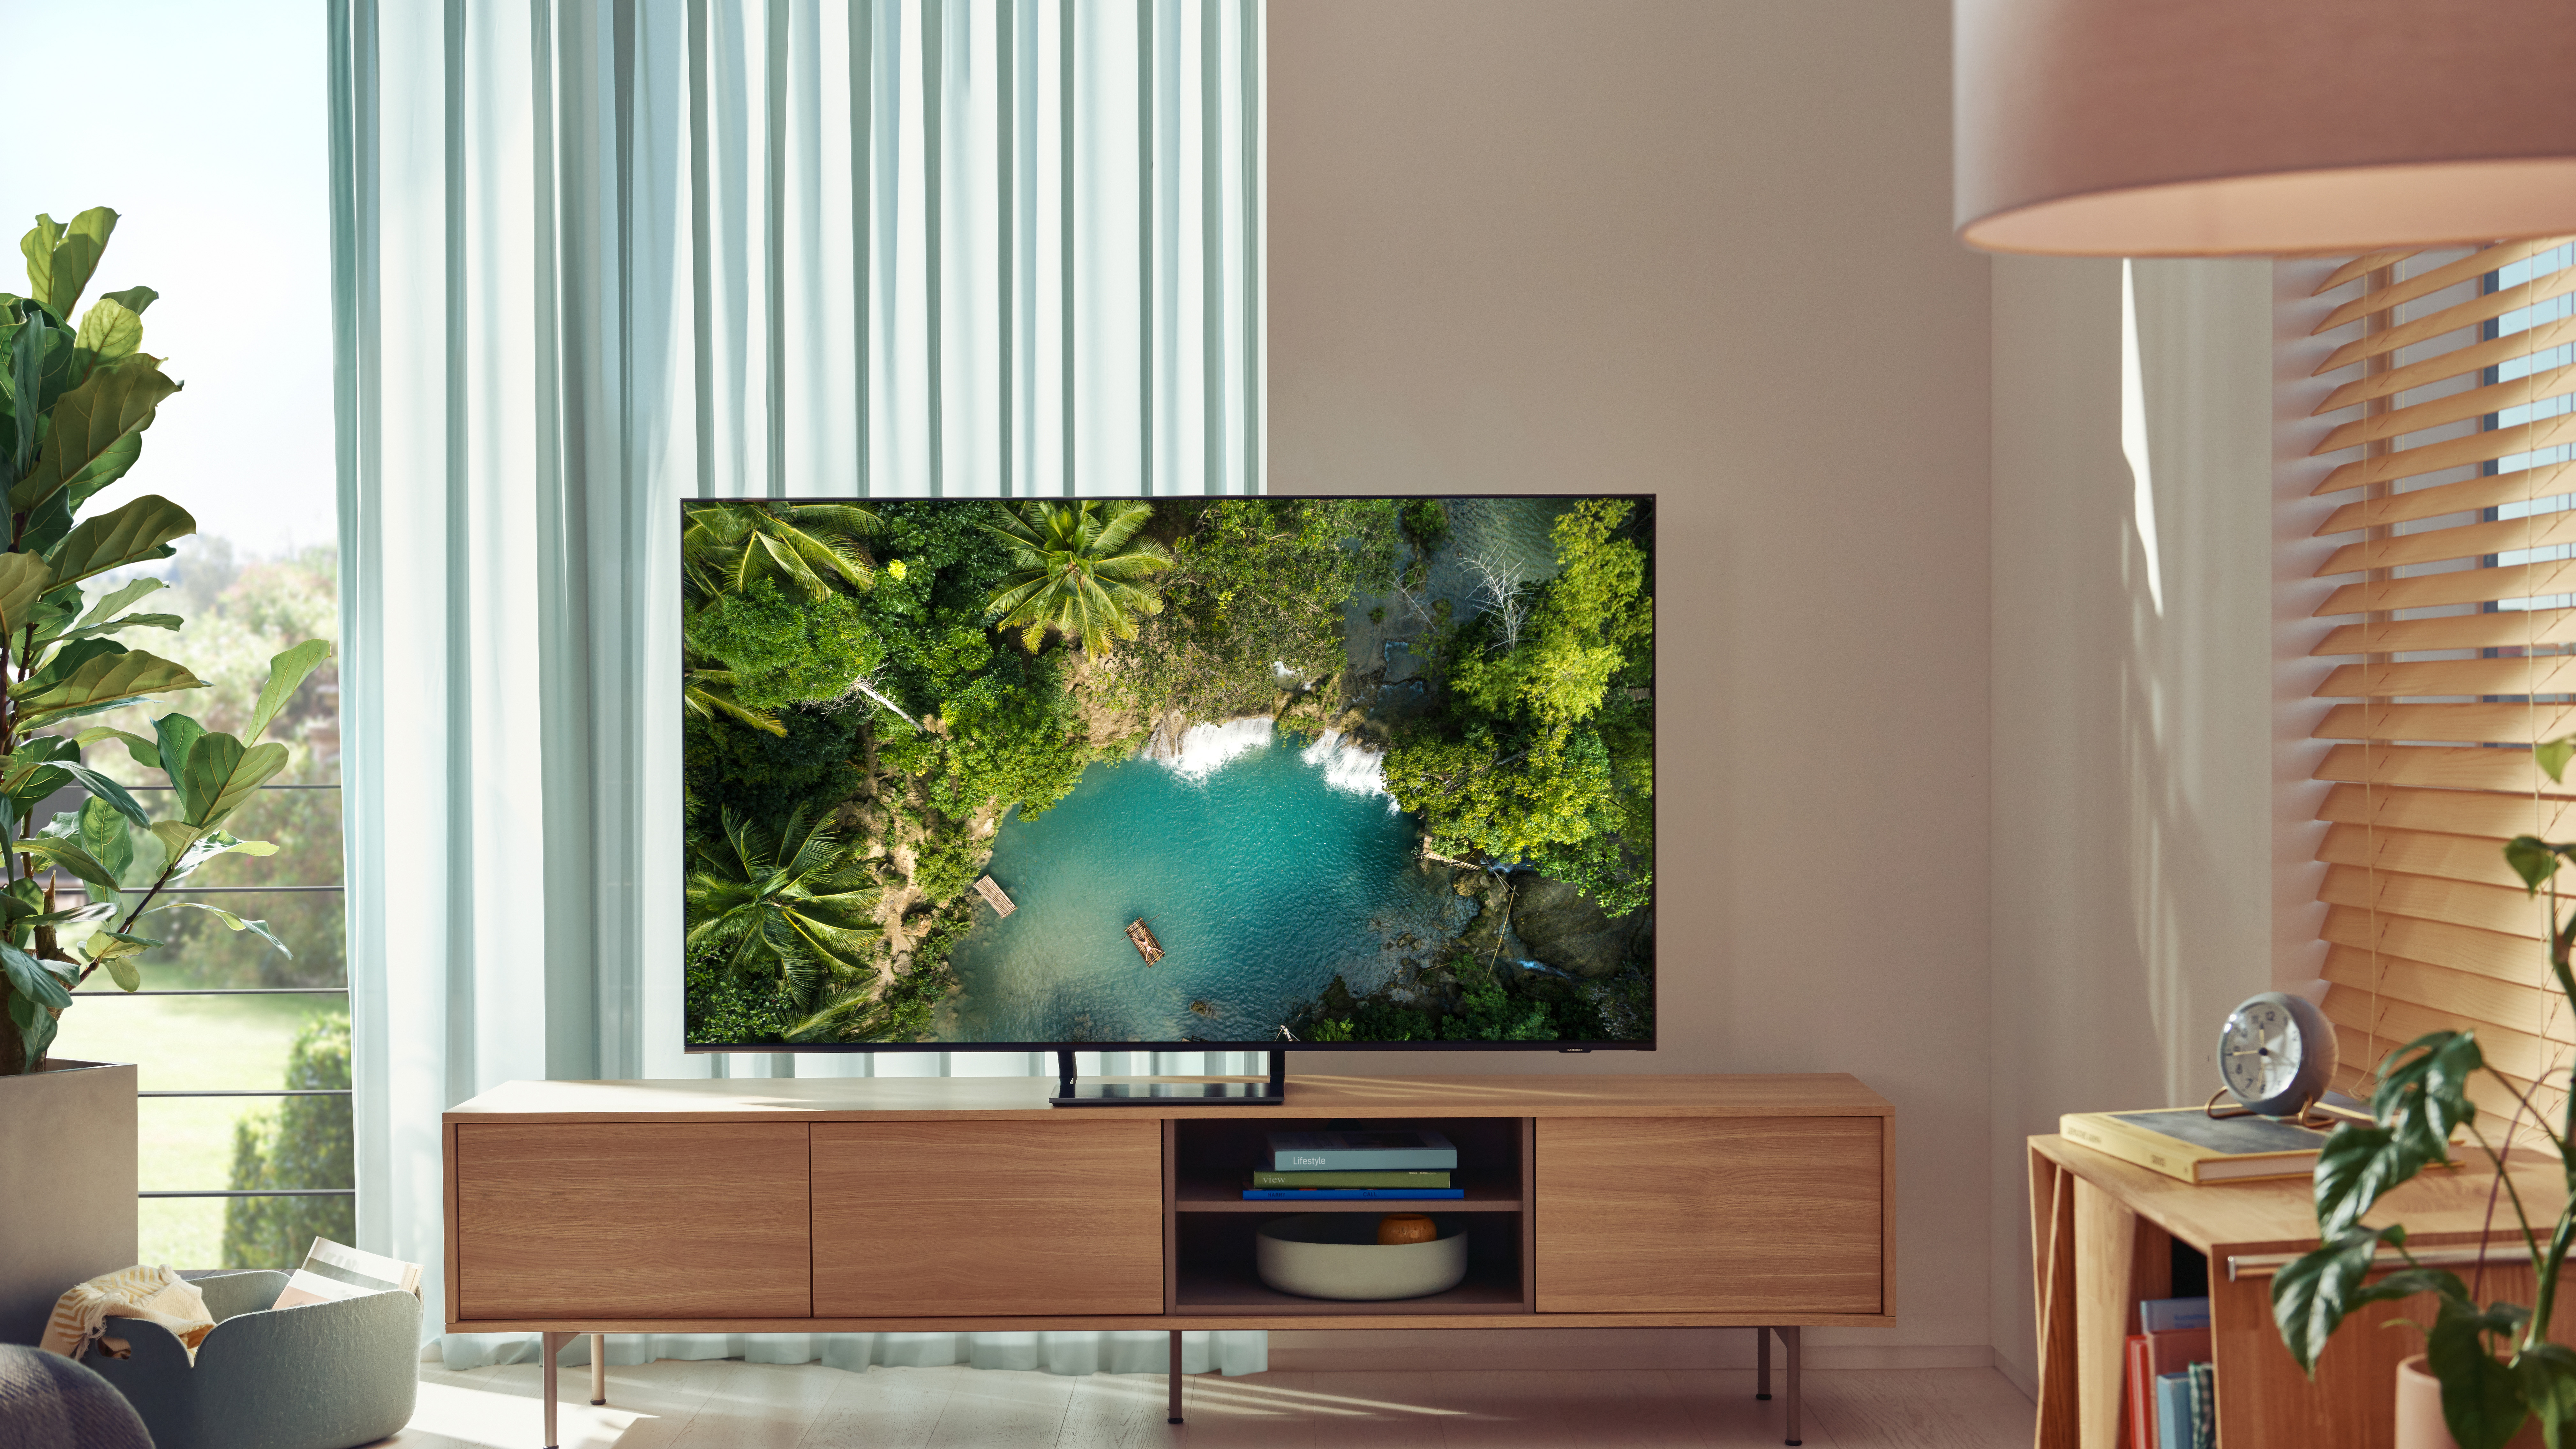 Samsung AU9000 TV обзор